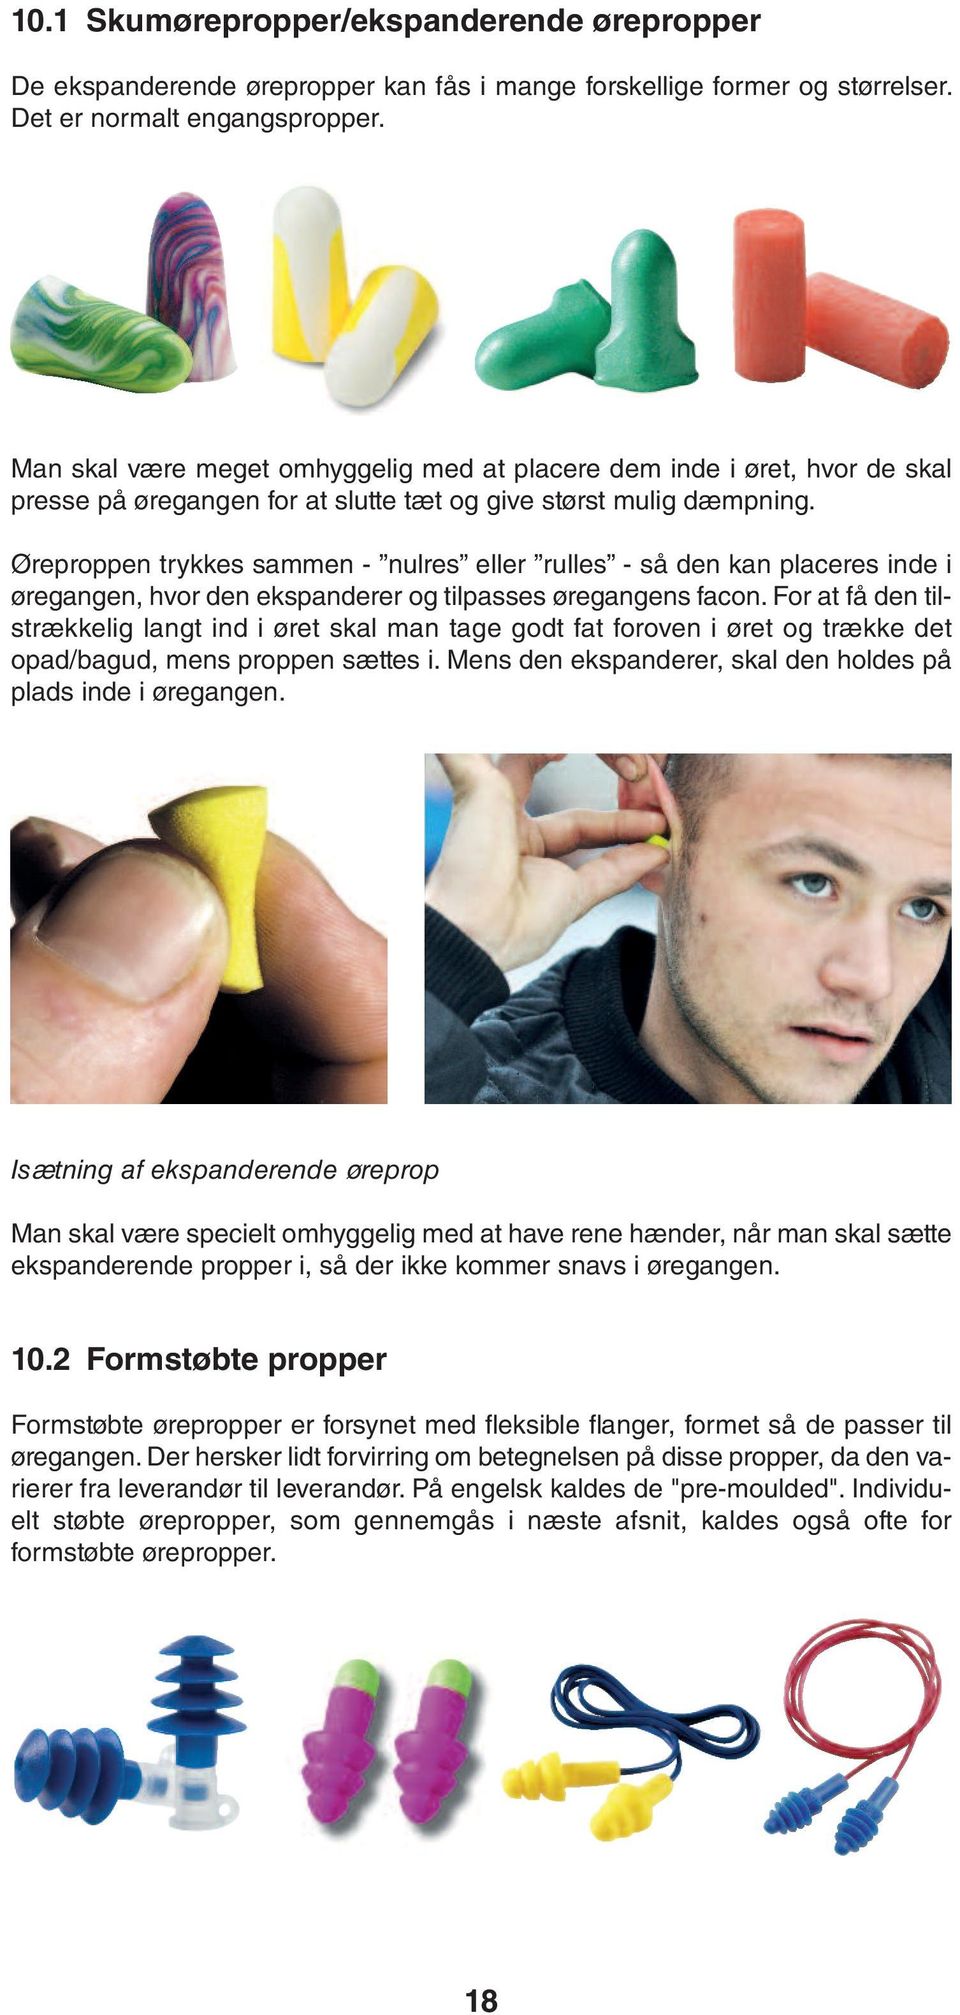 Høreværn Vejledning om valg og anvendelse af høreværn - PDF Free ...